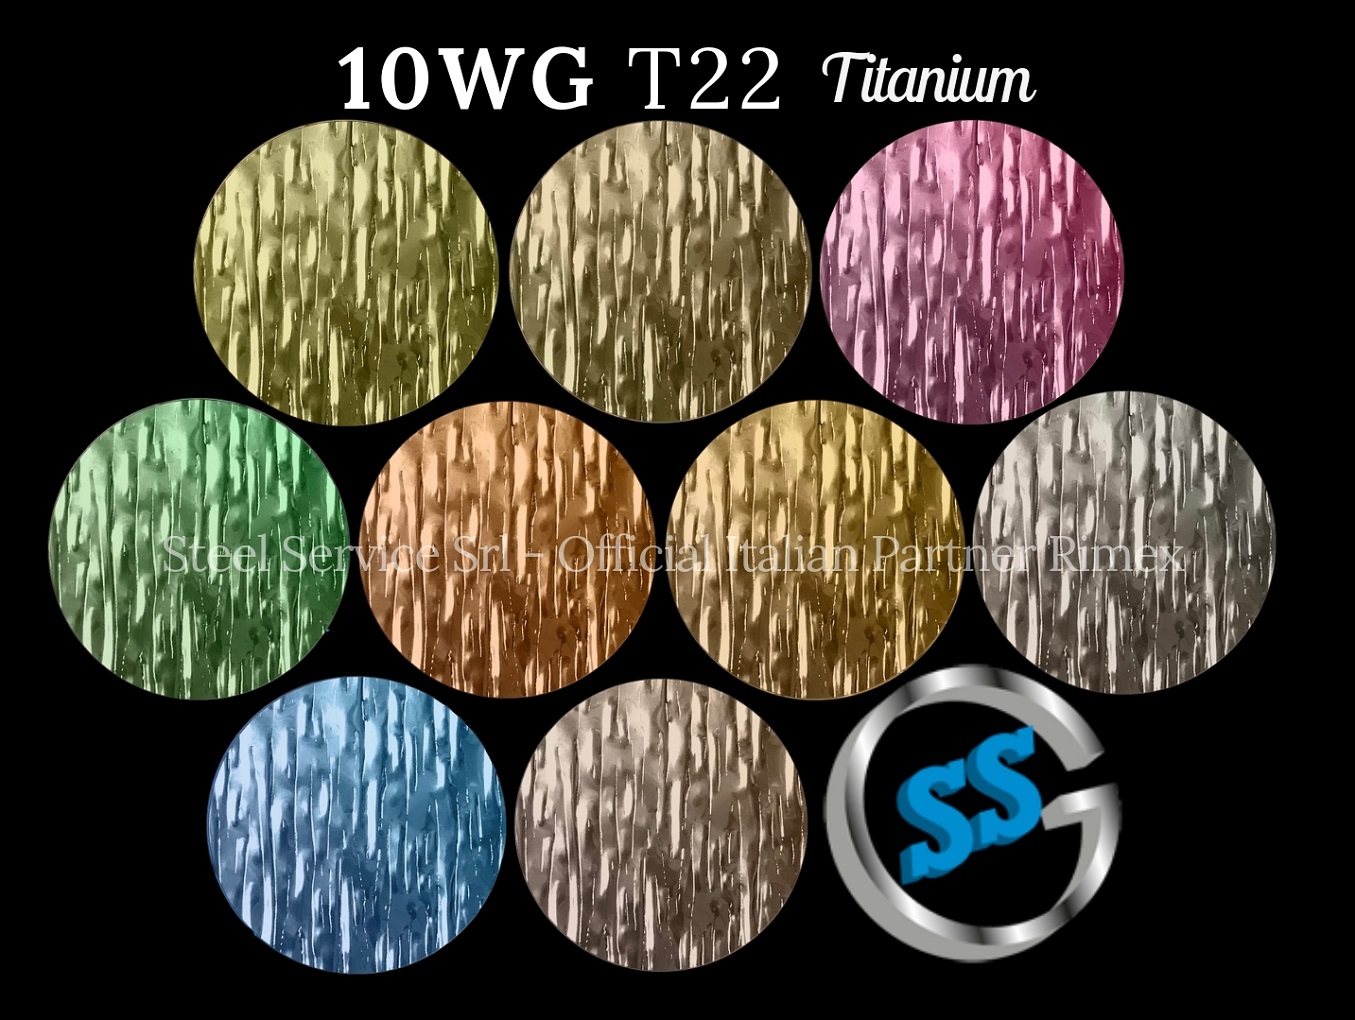 Lamiere bugnate colorate, Palette varianti colorate inox T22 Titanium delle lamiere inox 10WG, inox rigidizzato 10WG, inox effetto legno